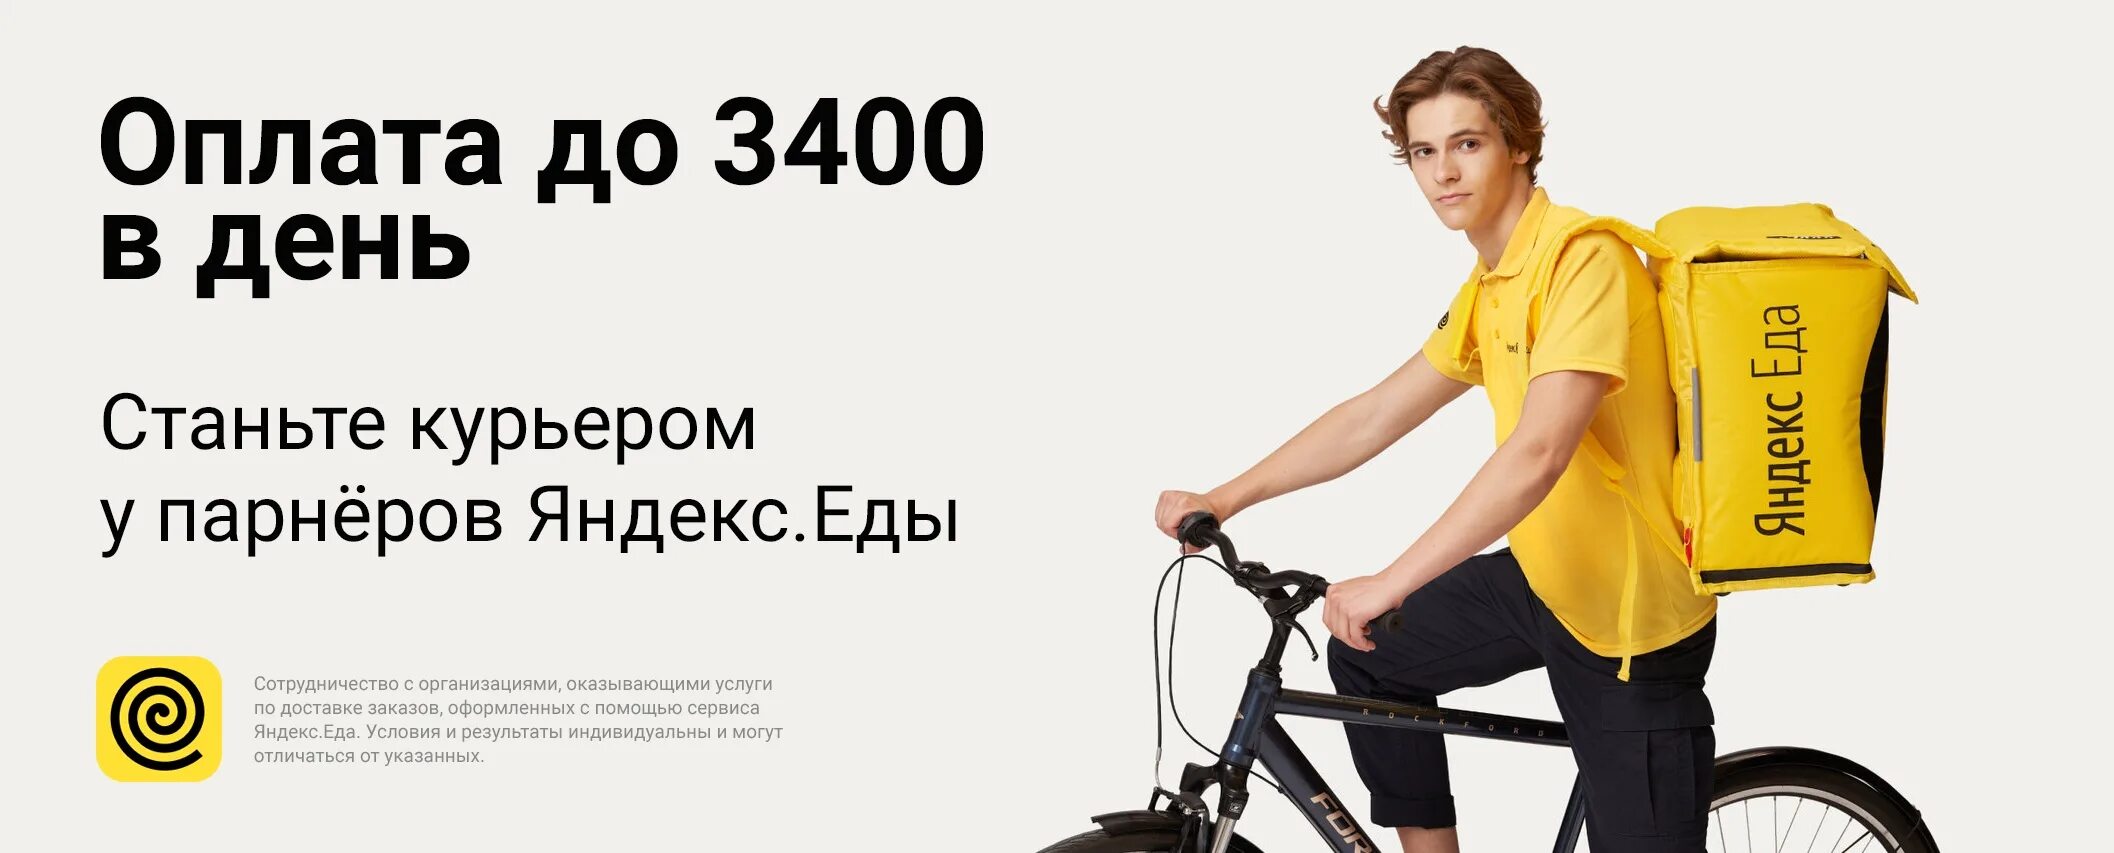 Курьер без яндекса. Яндекс курьер. Курьер партнера Яндекс еды. Реклама Яндекс курьер. Яндекс еда реклама.